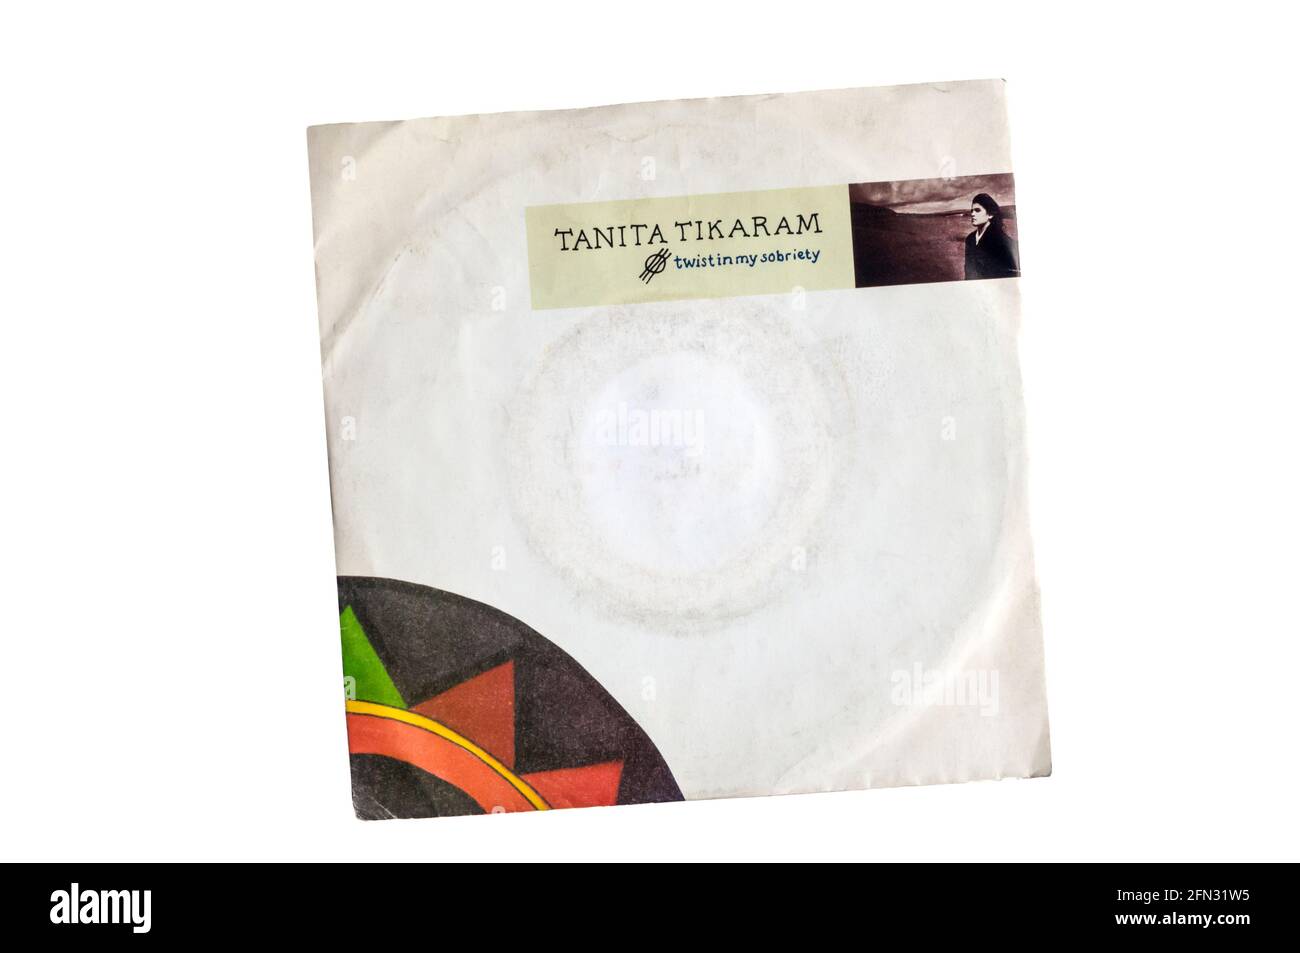 1988 7' single, Twist In My Sobriety by Tanita Tikaram. Stock Photo